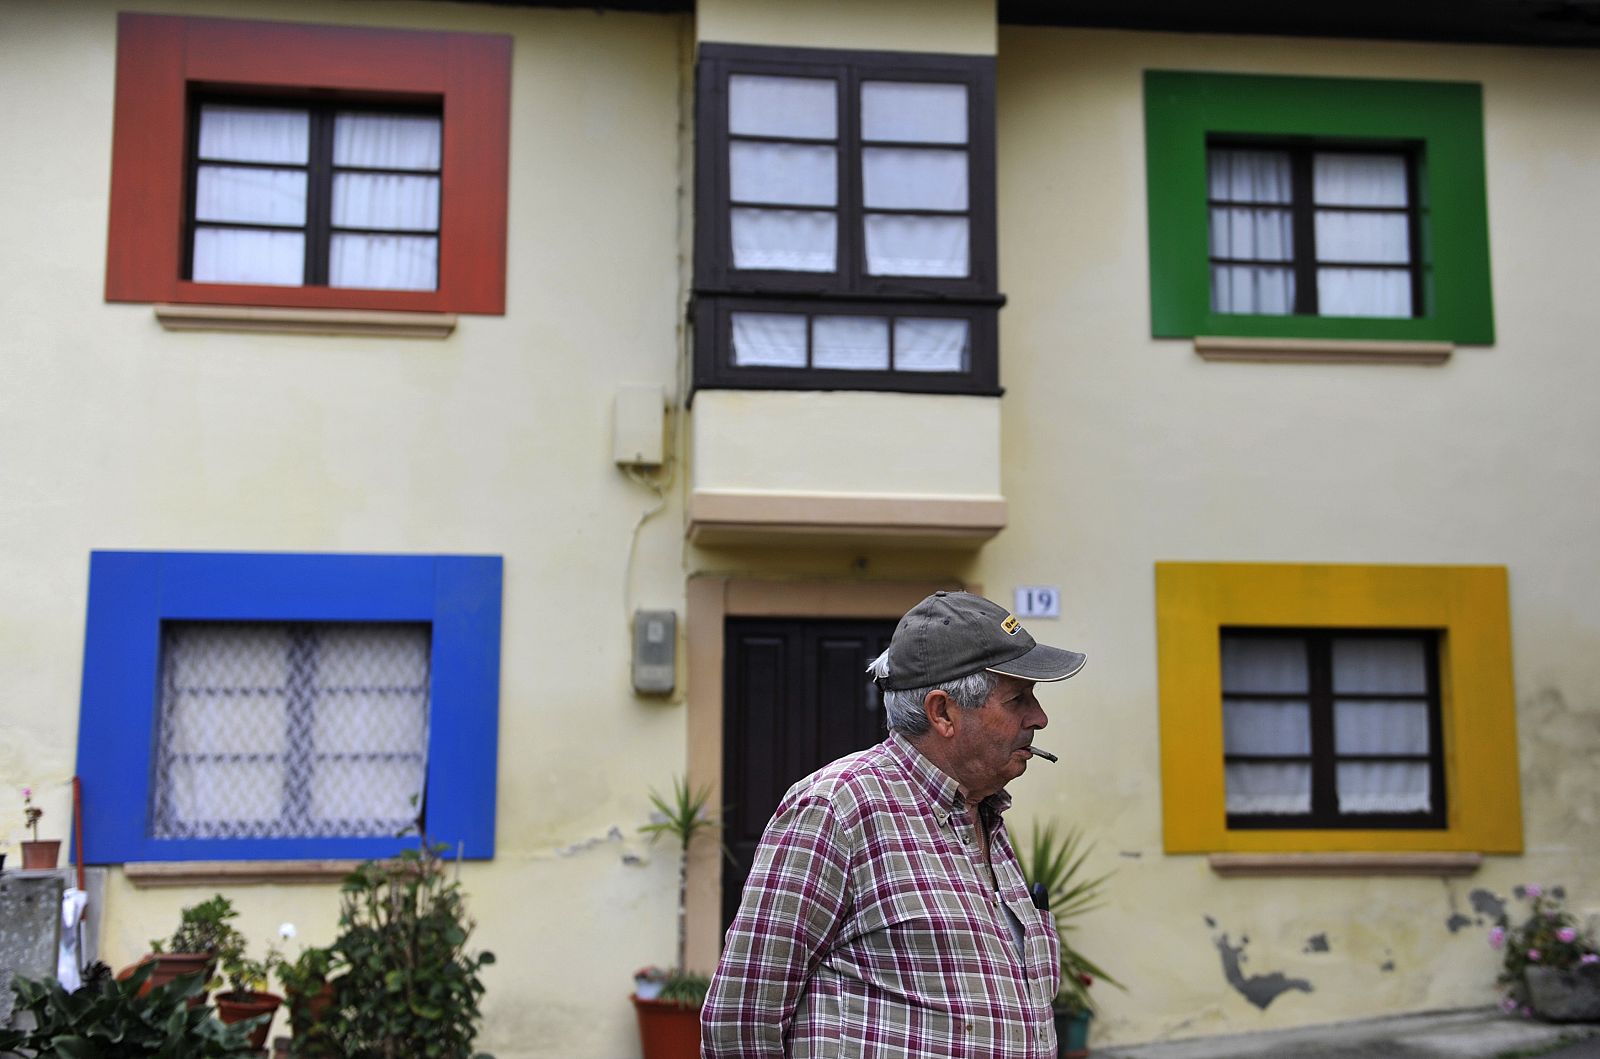 Un habitante de Sietes frente a una de las casas decoradas con los colores corporativos de Windows en el pequeño pueblo asturiano. El jueves 22 de octubre tendrá lugar en este pueblo el evento de lanzamiento de Windows 7.